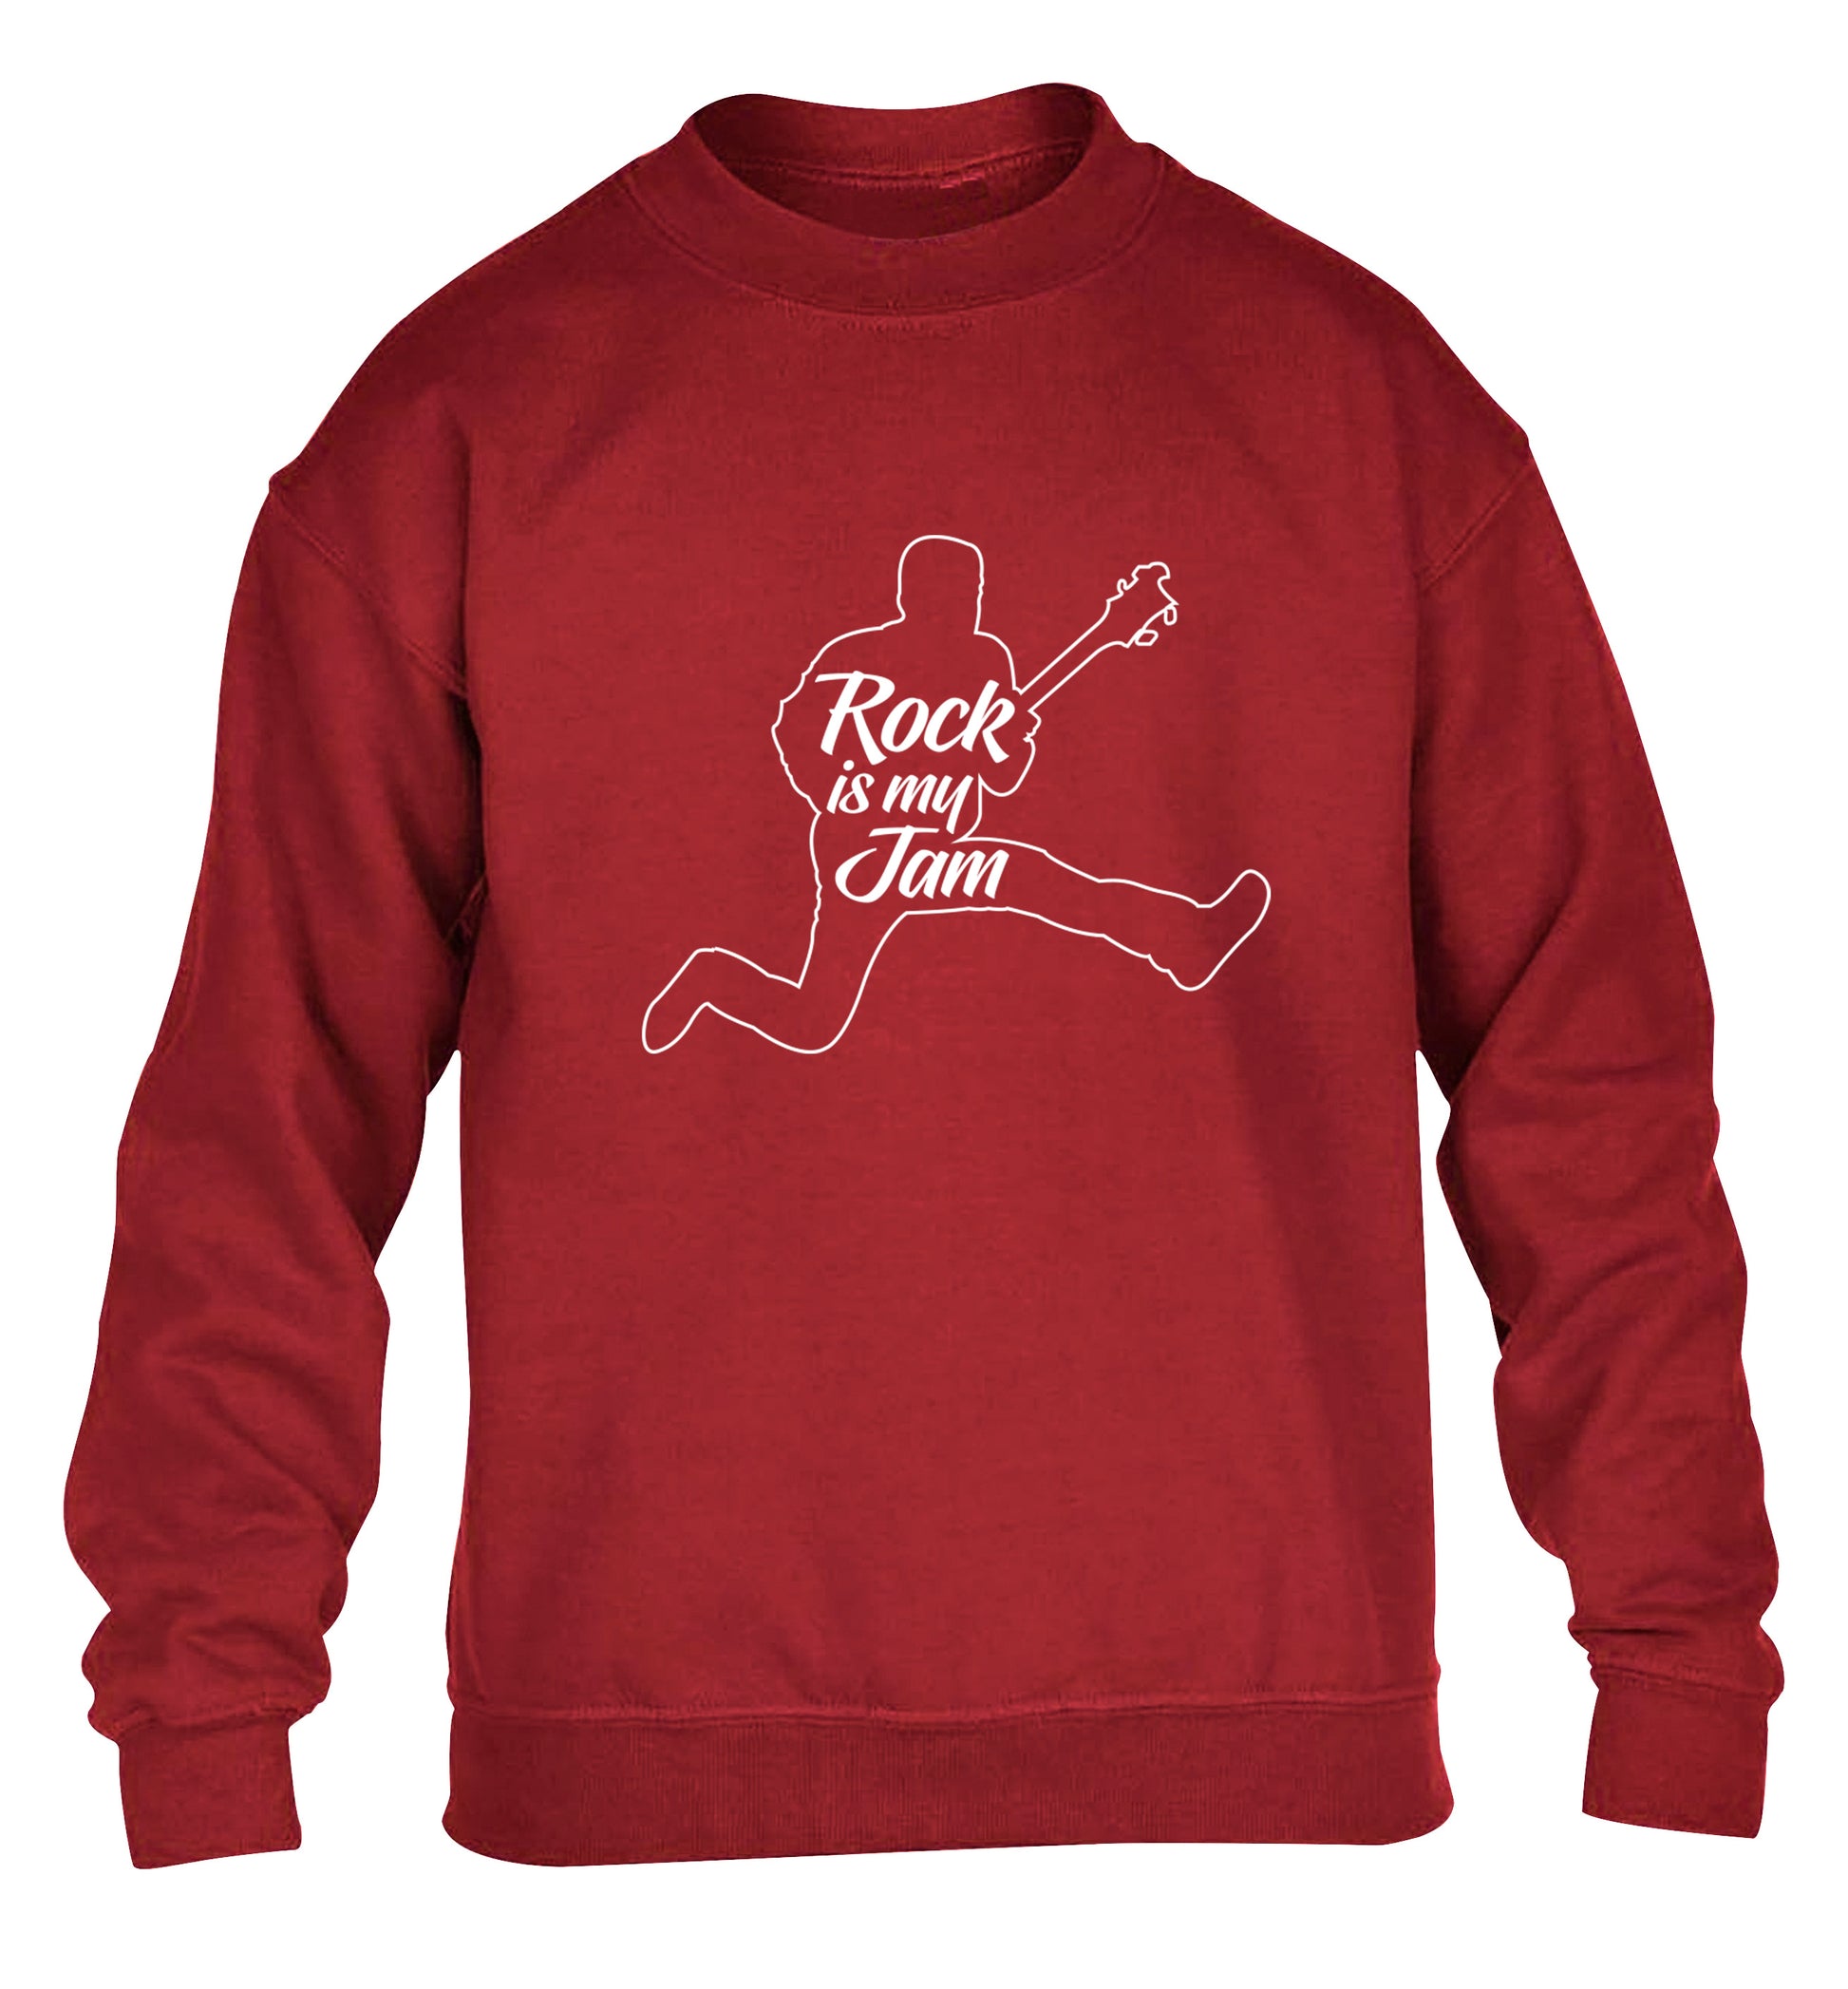 Rock is my jam children's grey sweater 12-13 Years